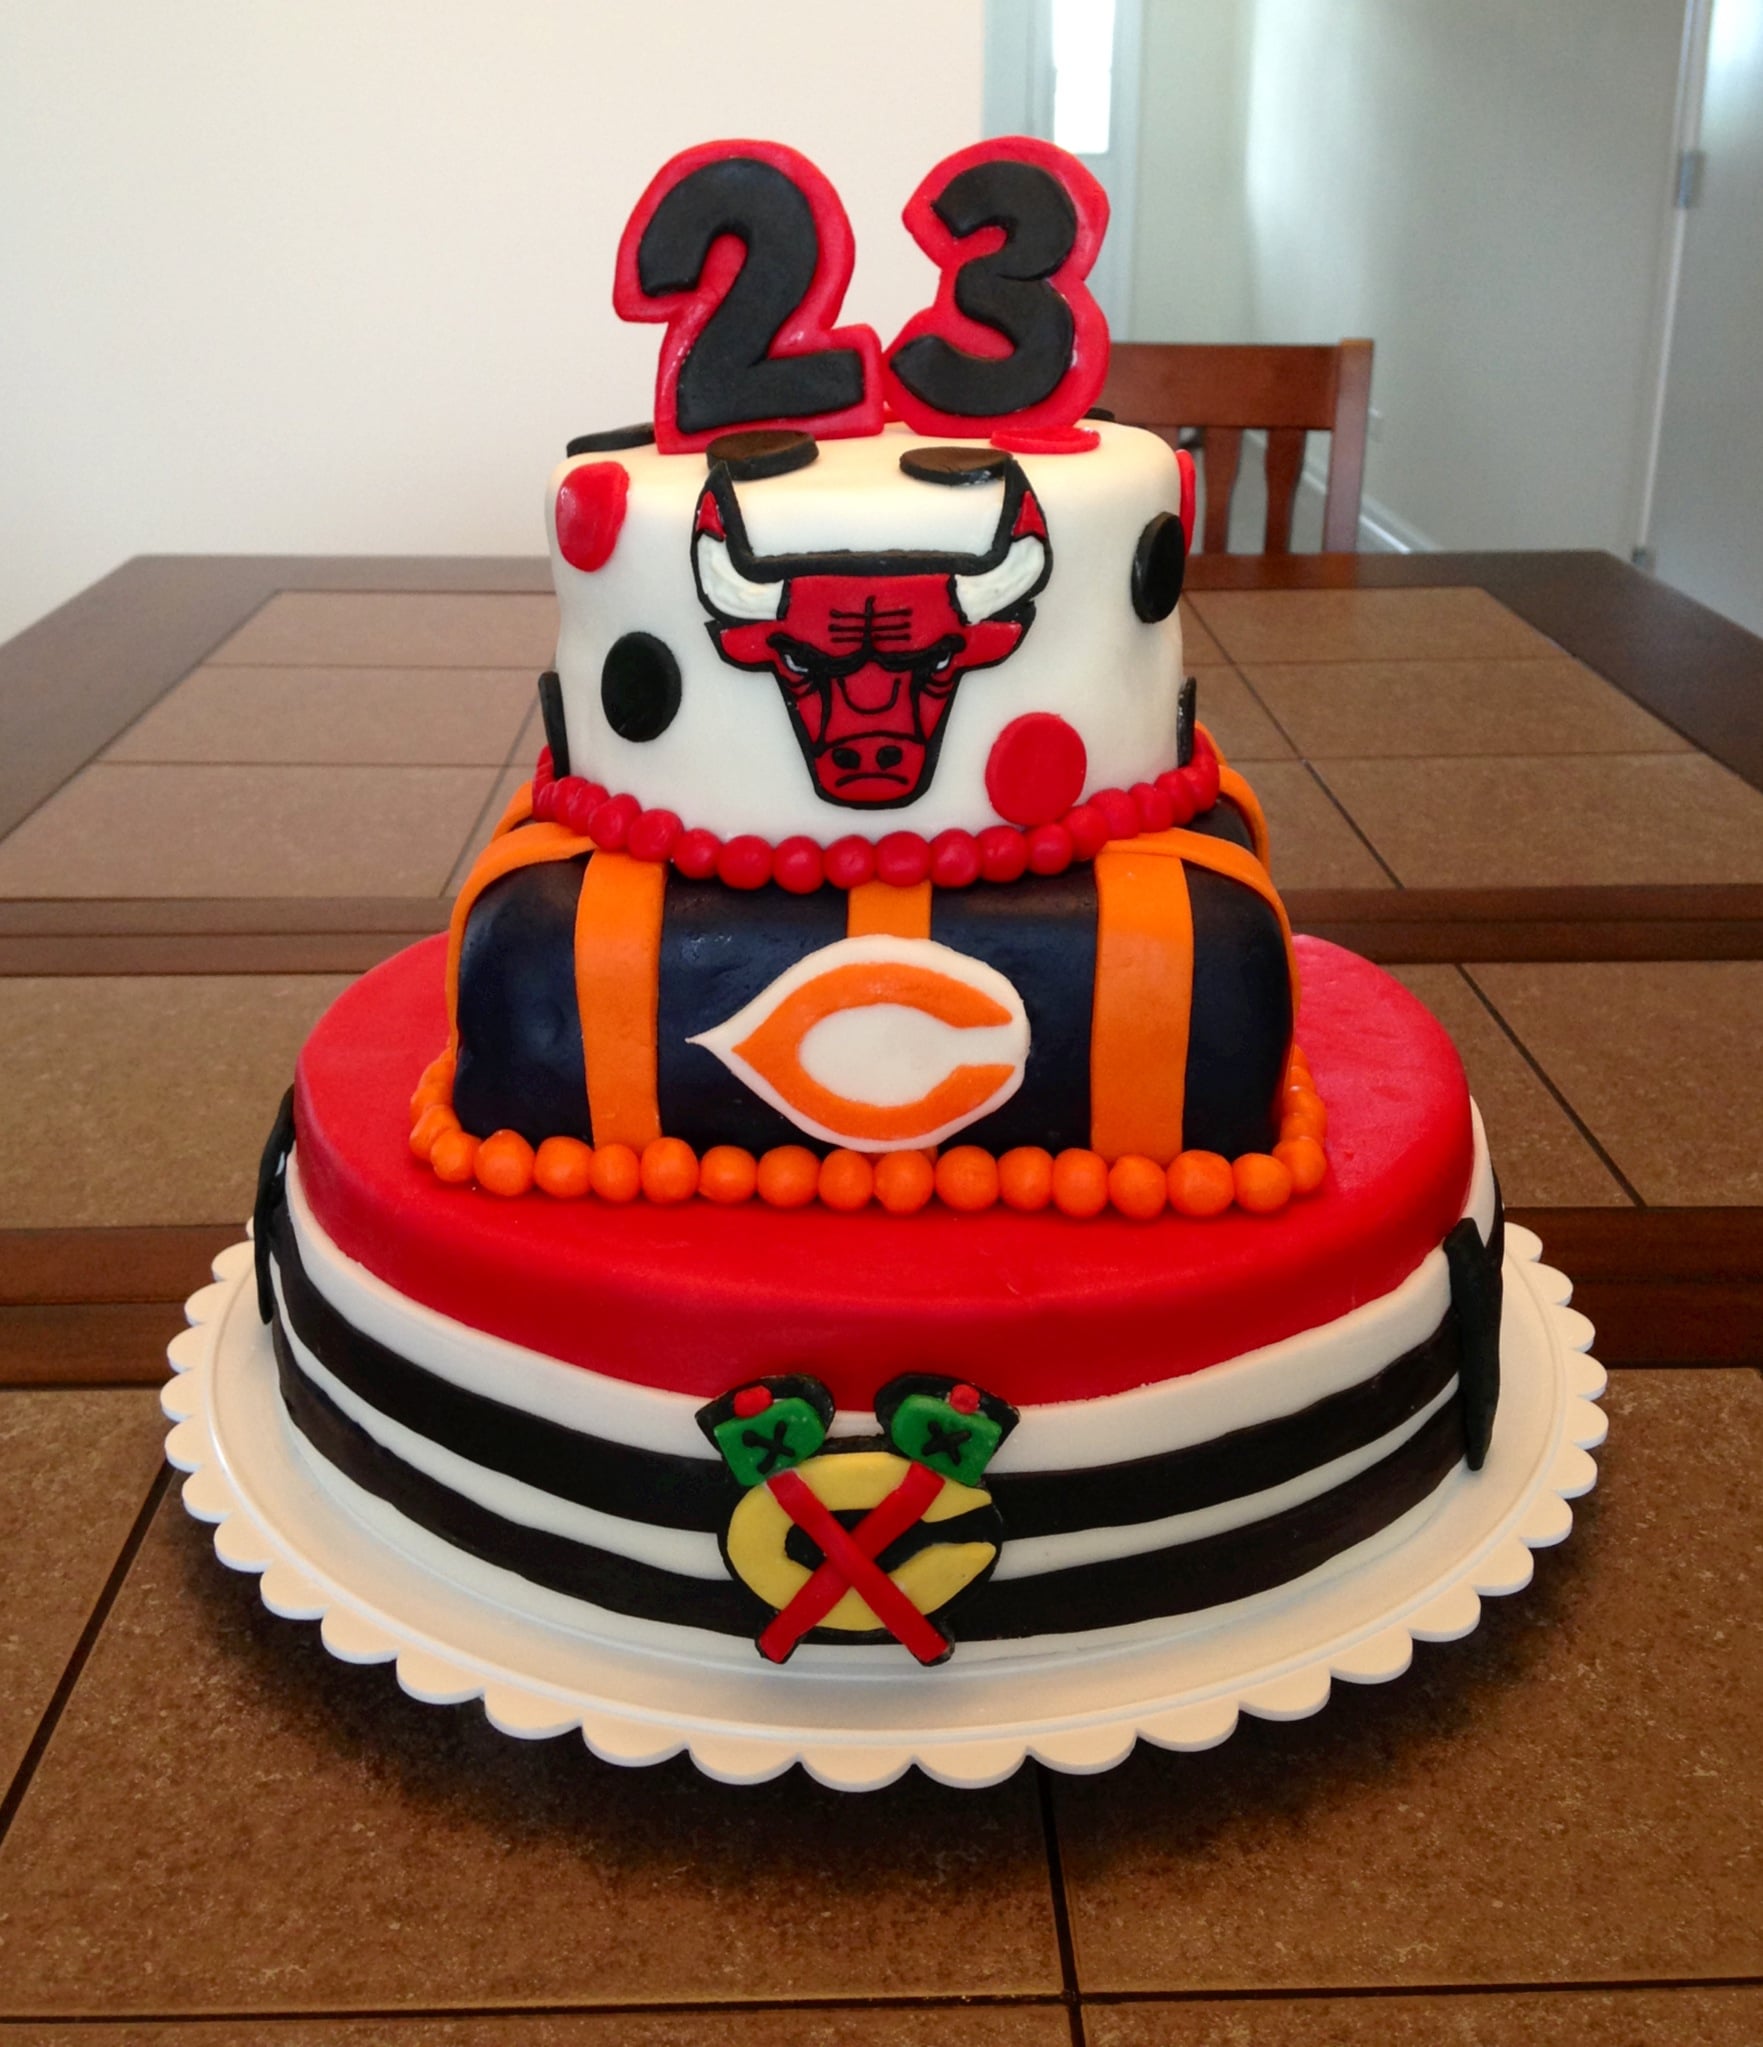 Birthdaycake design: 37+ Best Birthday Cakes Chicago Pictures